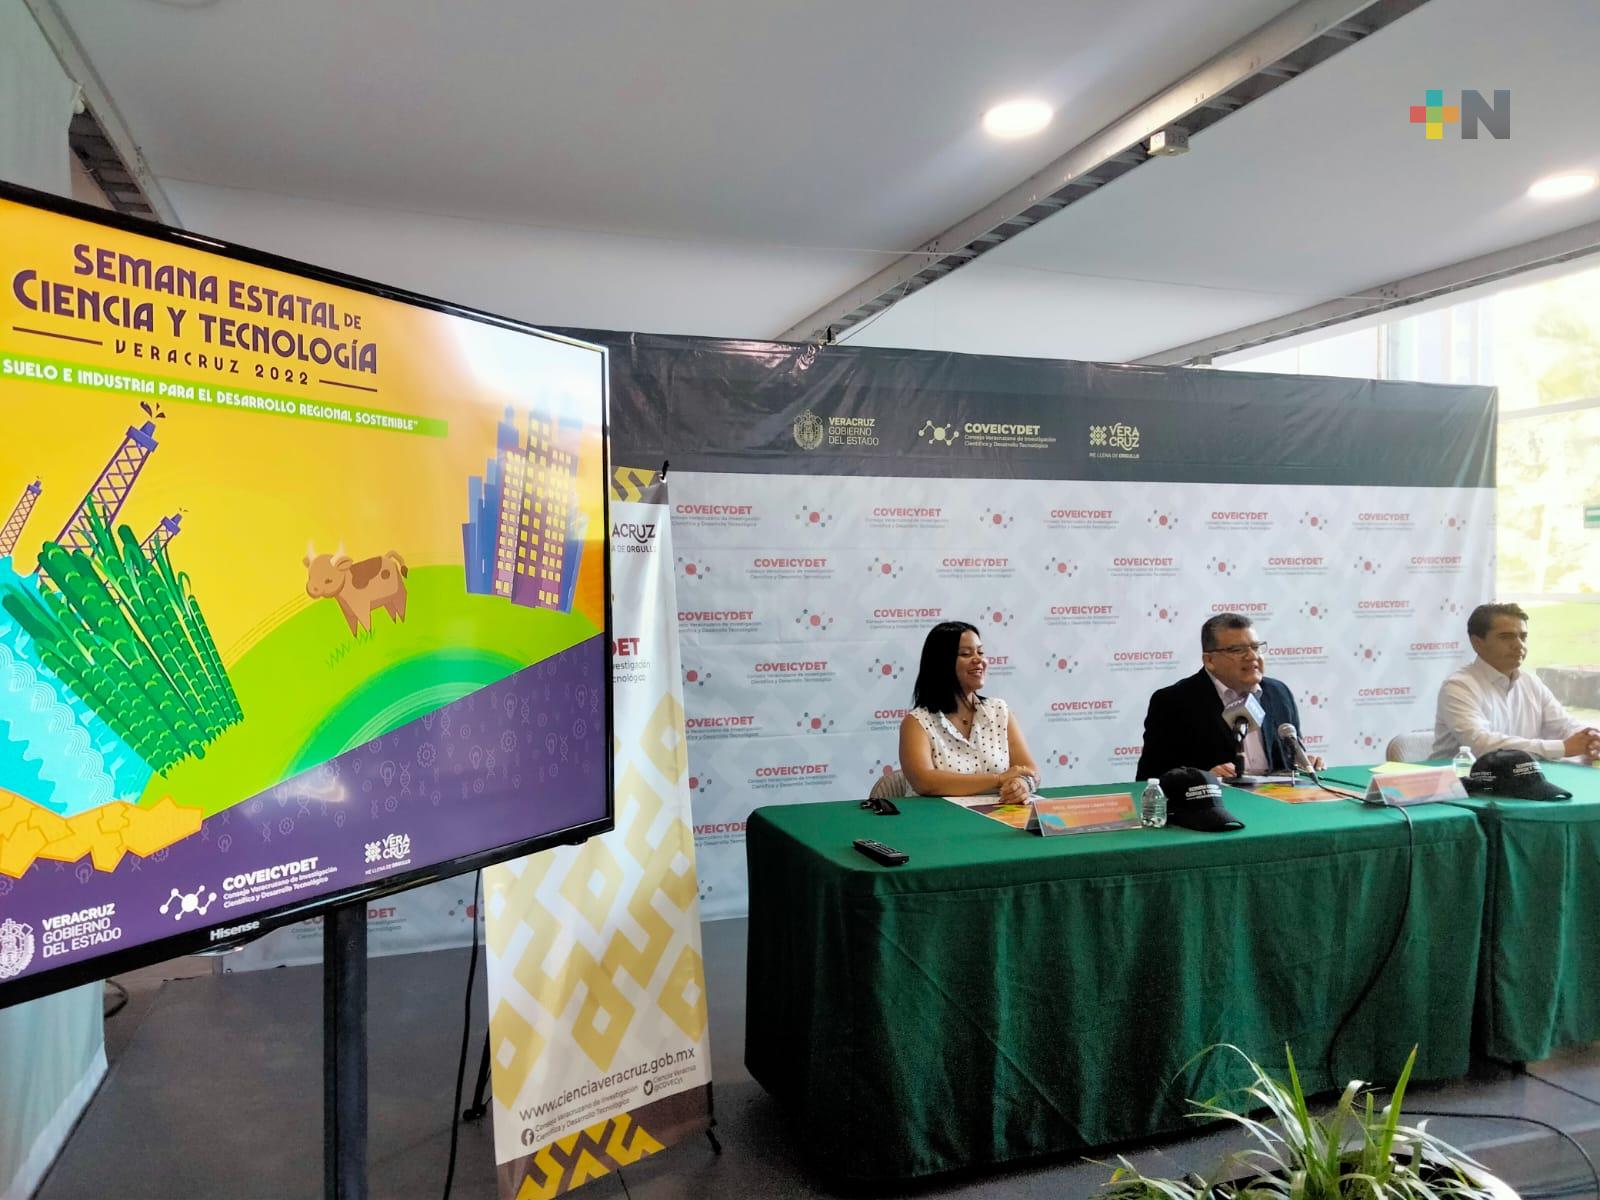 Del 18 al 21 de octubre se realizará la Semana Estatal de Ciencia y Tecnología Veracruz 2022, en el Museo Kaná